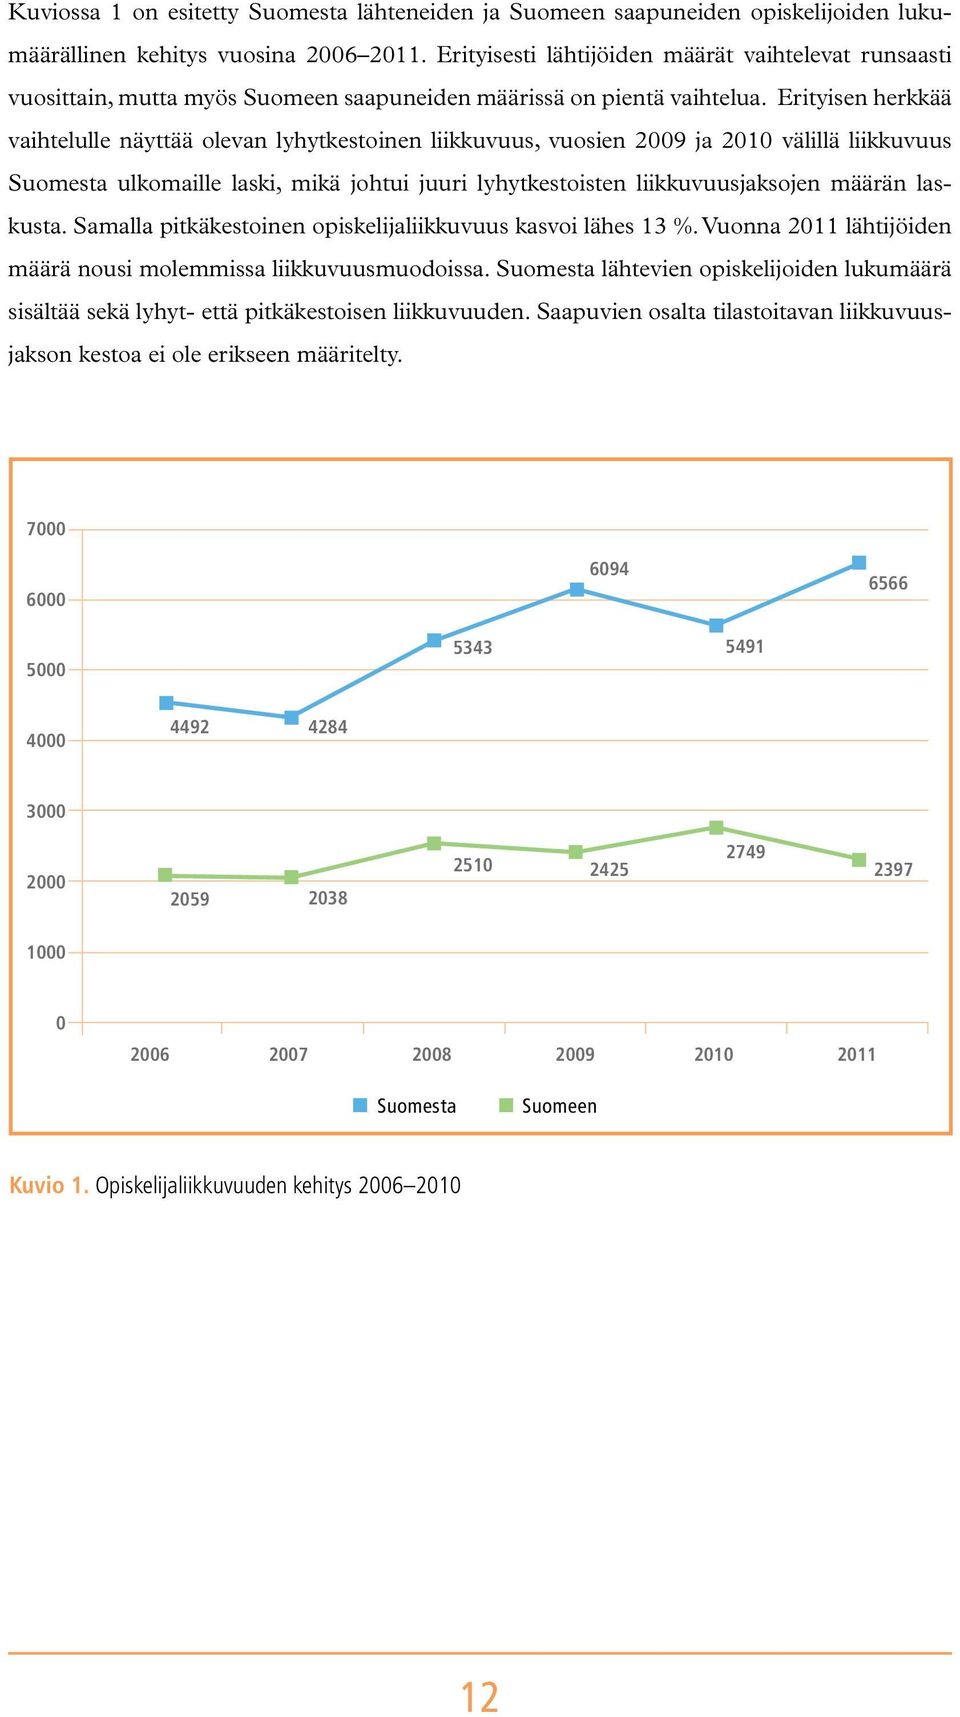 Erityisen herkkää vaihtelulle näyttää olevan lyhytkestoinen liikkuvuus, vuosien 2009 ja 2010 välillä liikkuvuus Suomesta ulkomaille laski, mikä johtui juuri lyhytkestoisten liikkuvuusjaksojen määrän